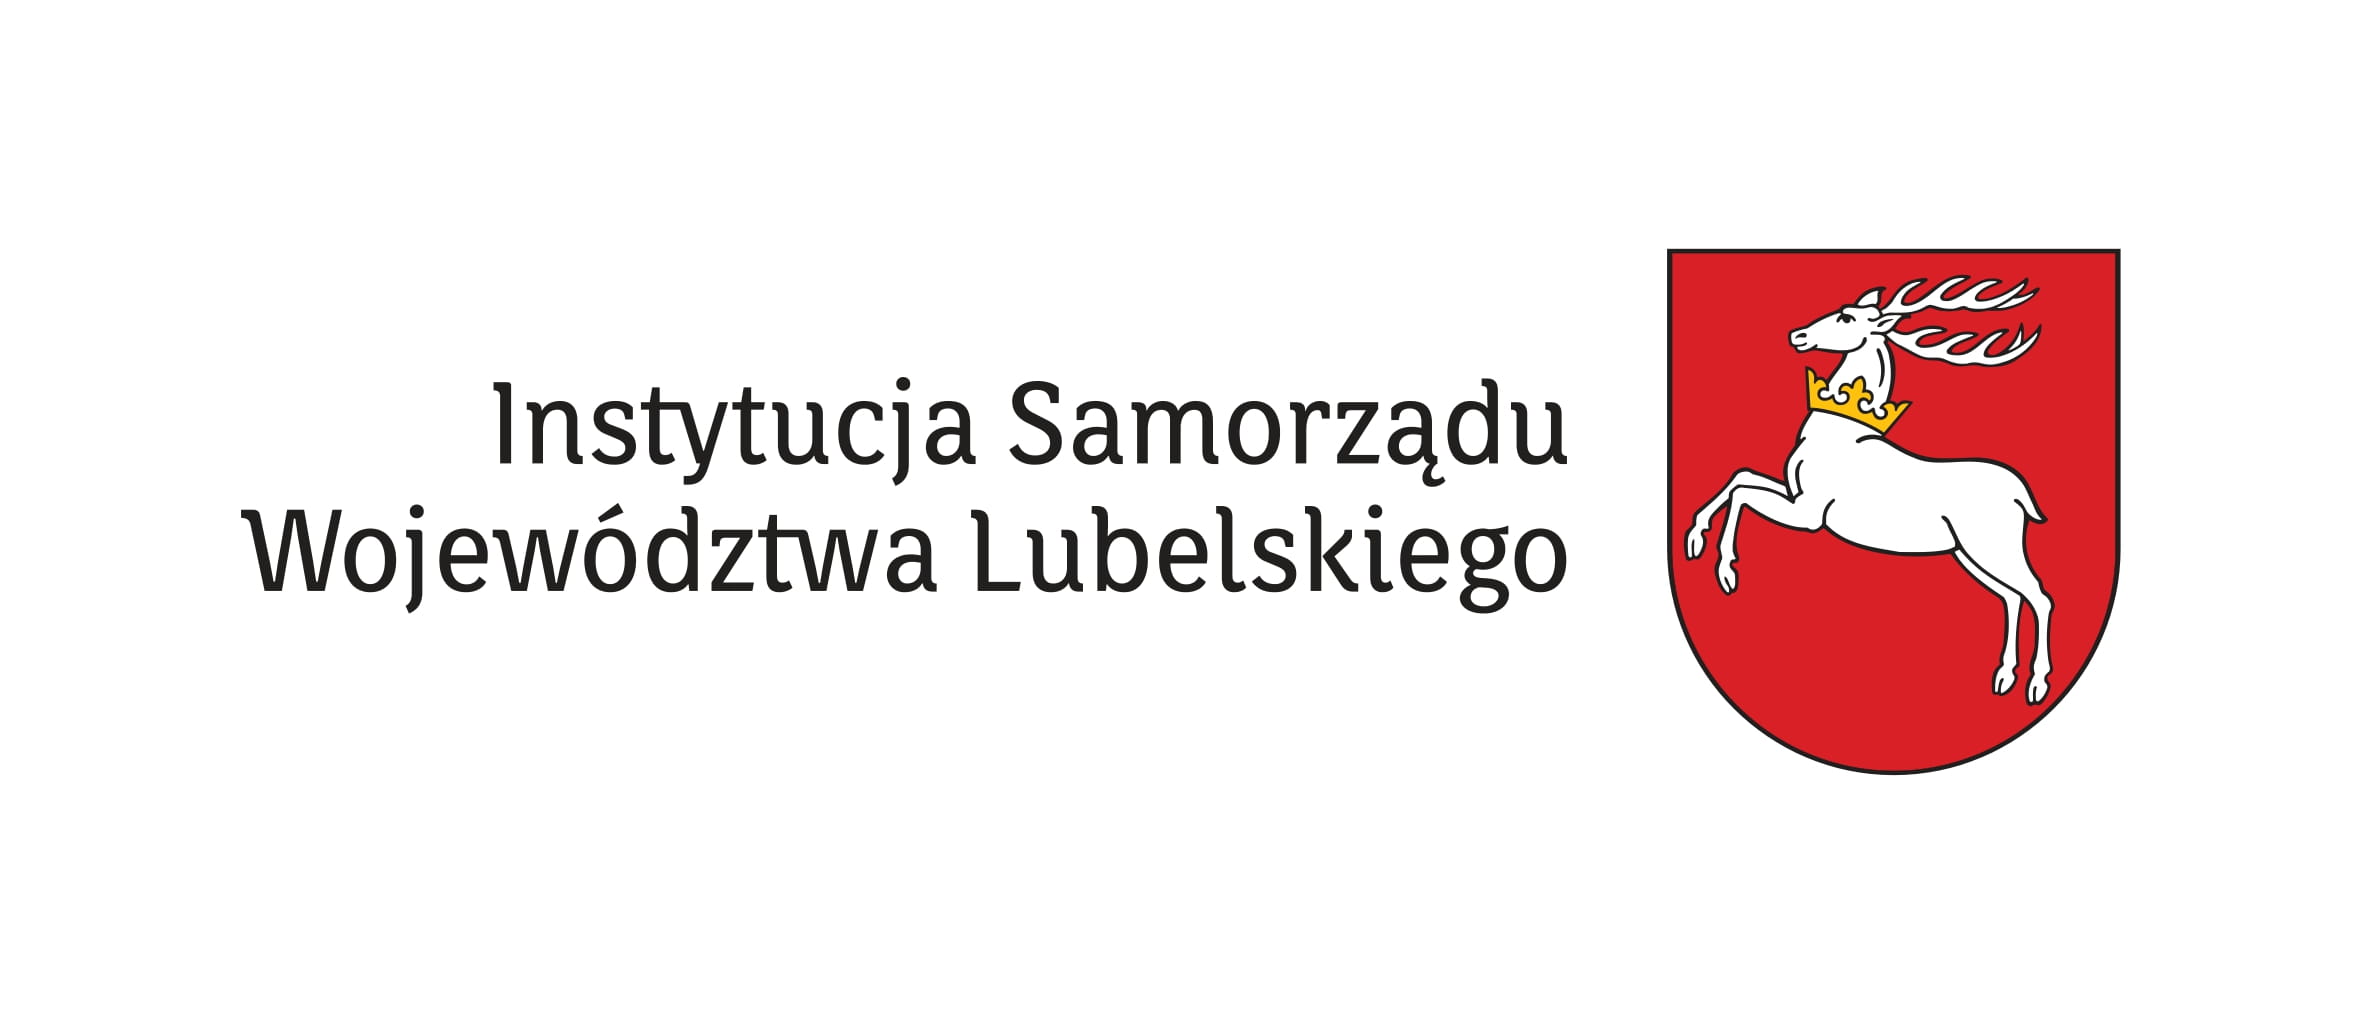 Muzeum Wsi Lubelskiej w Lublinie